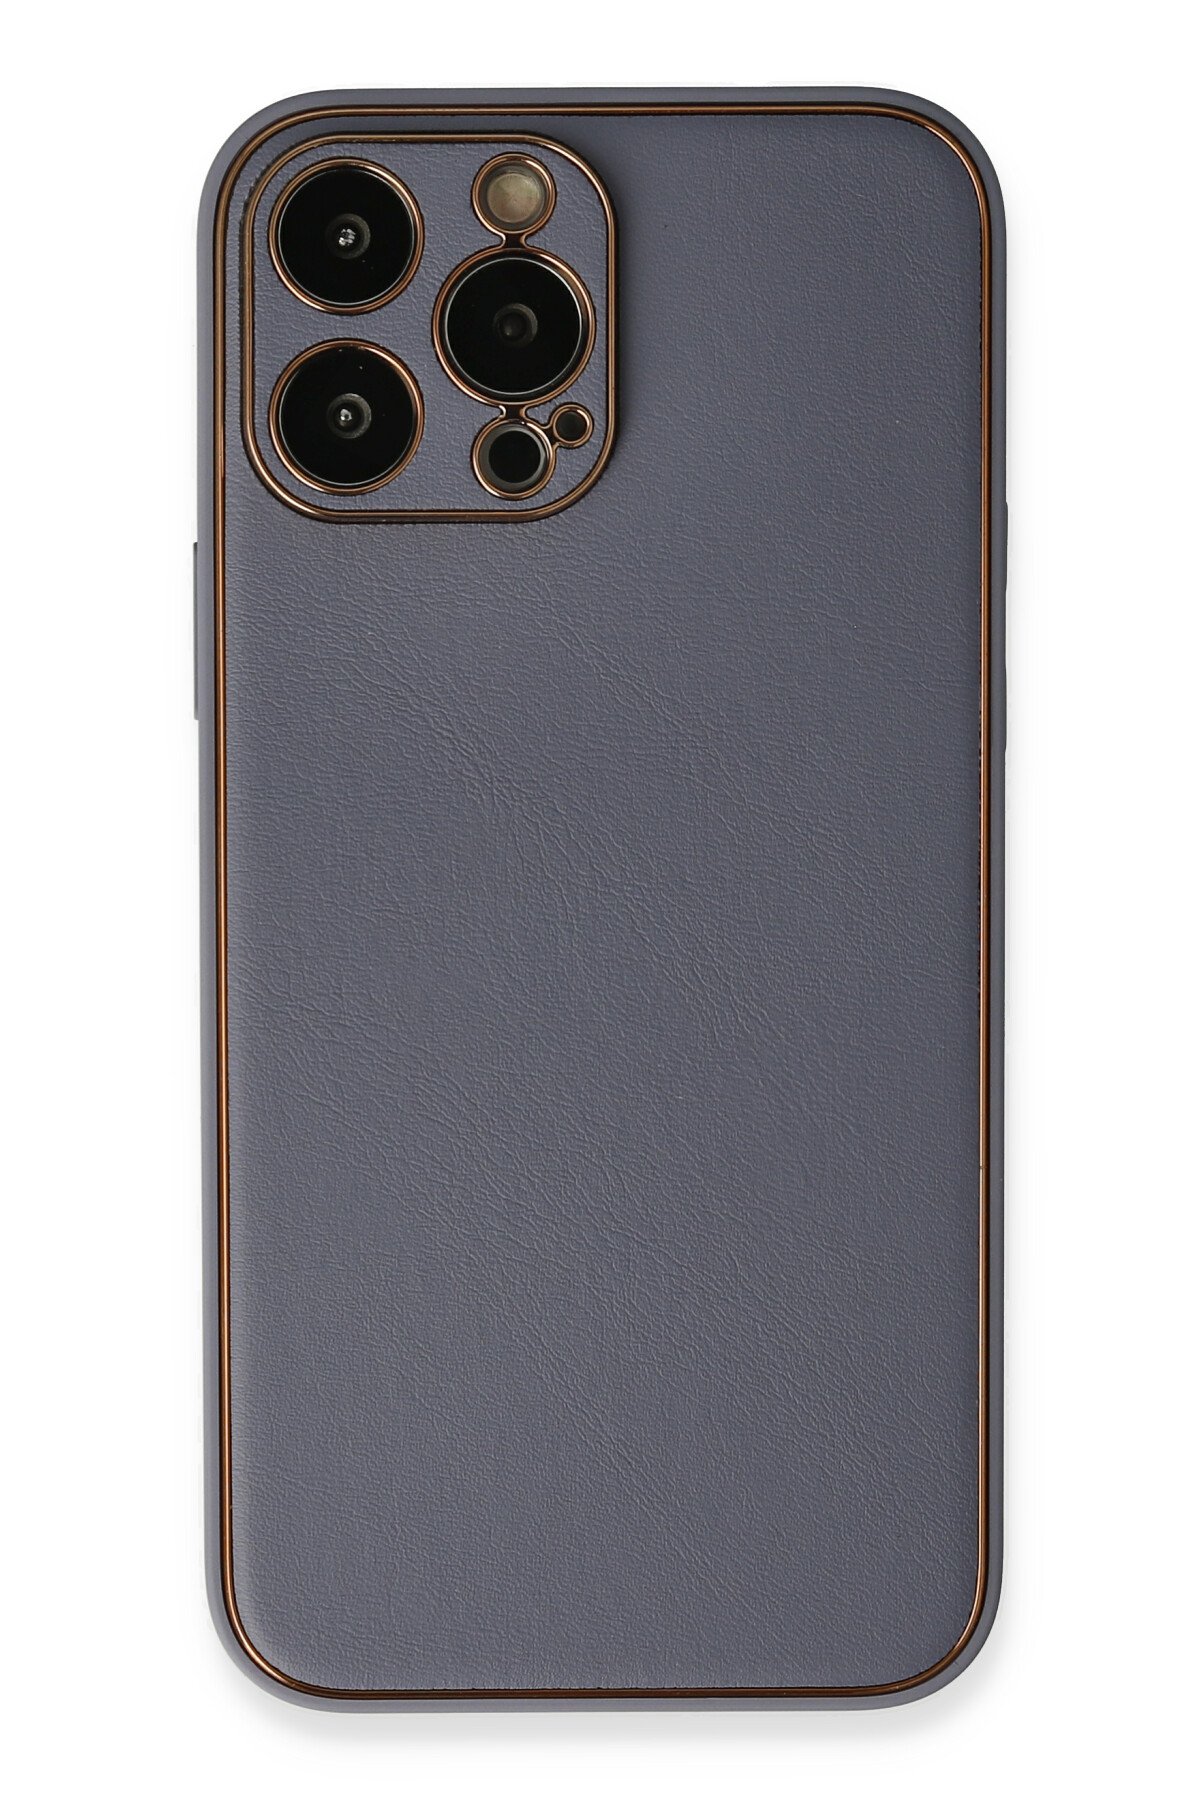 Newface iPhone 13 Pro Max Kılıf Montreal Yüzüklü Silikon Kapak - Kırmızı